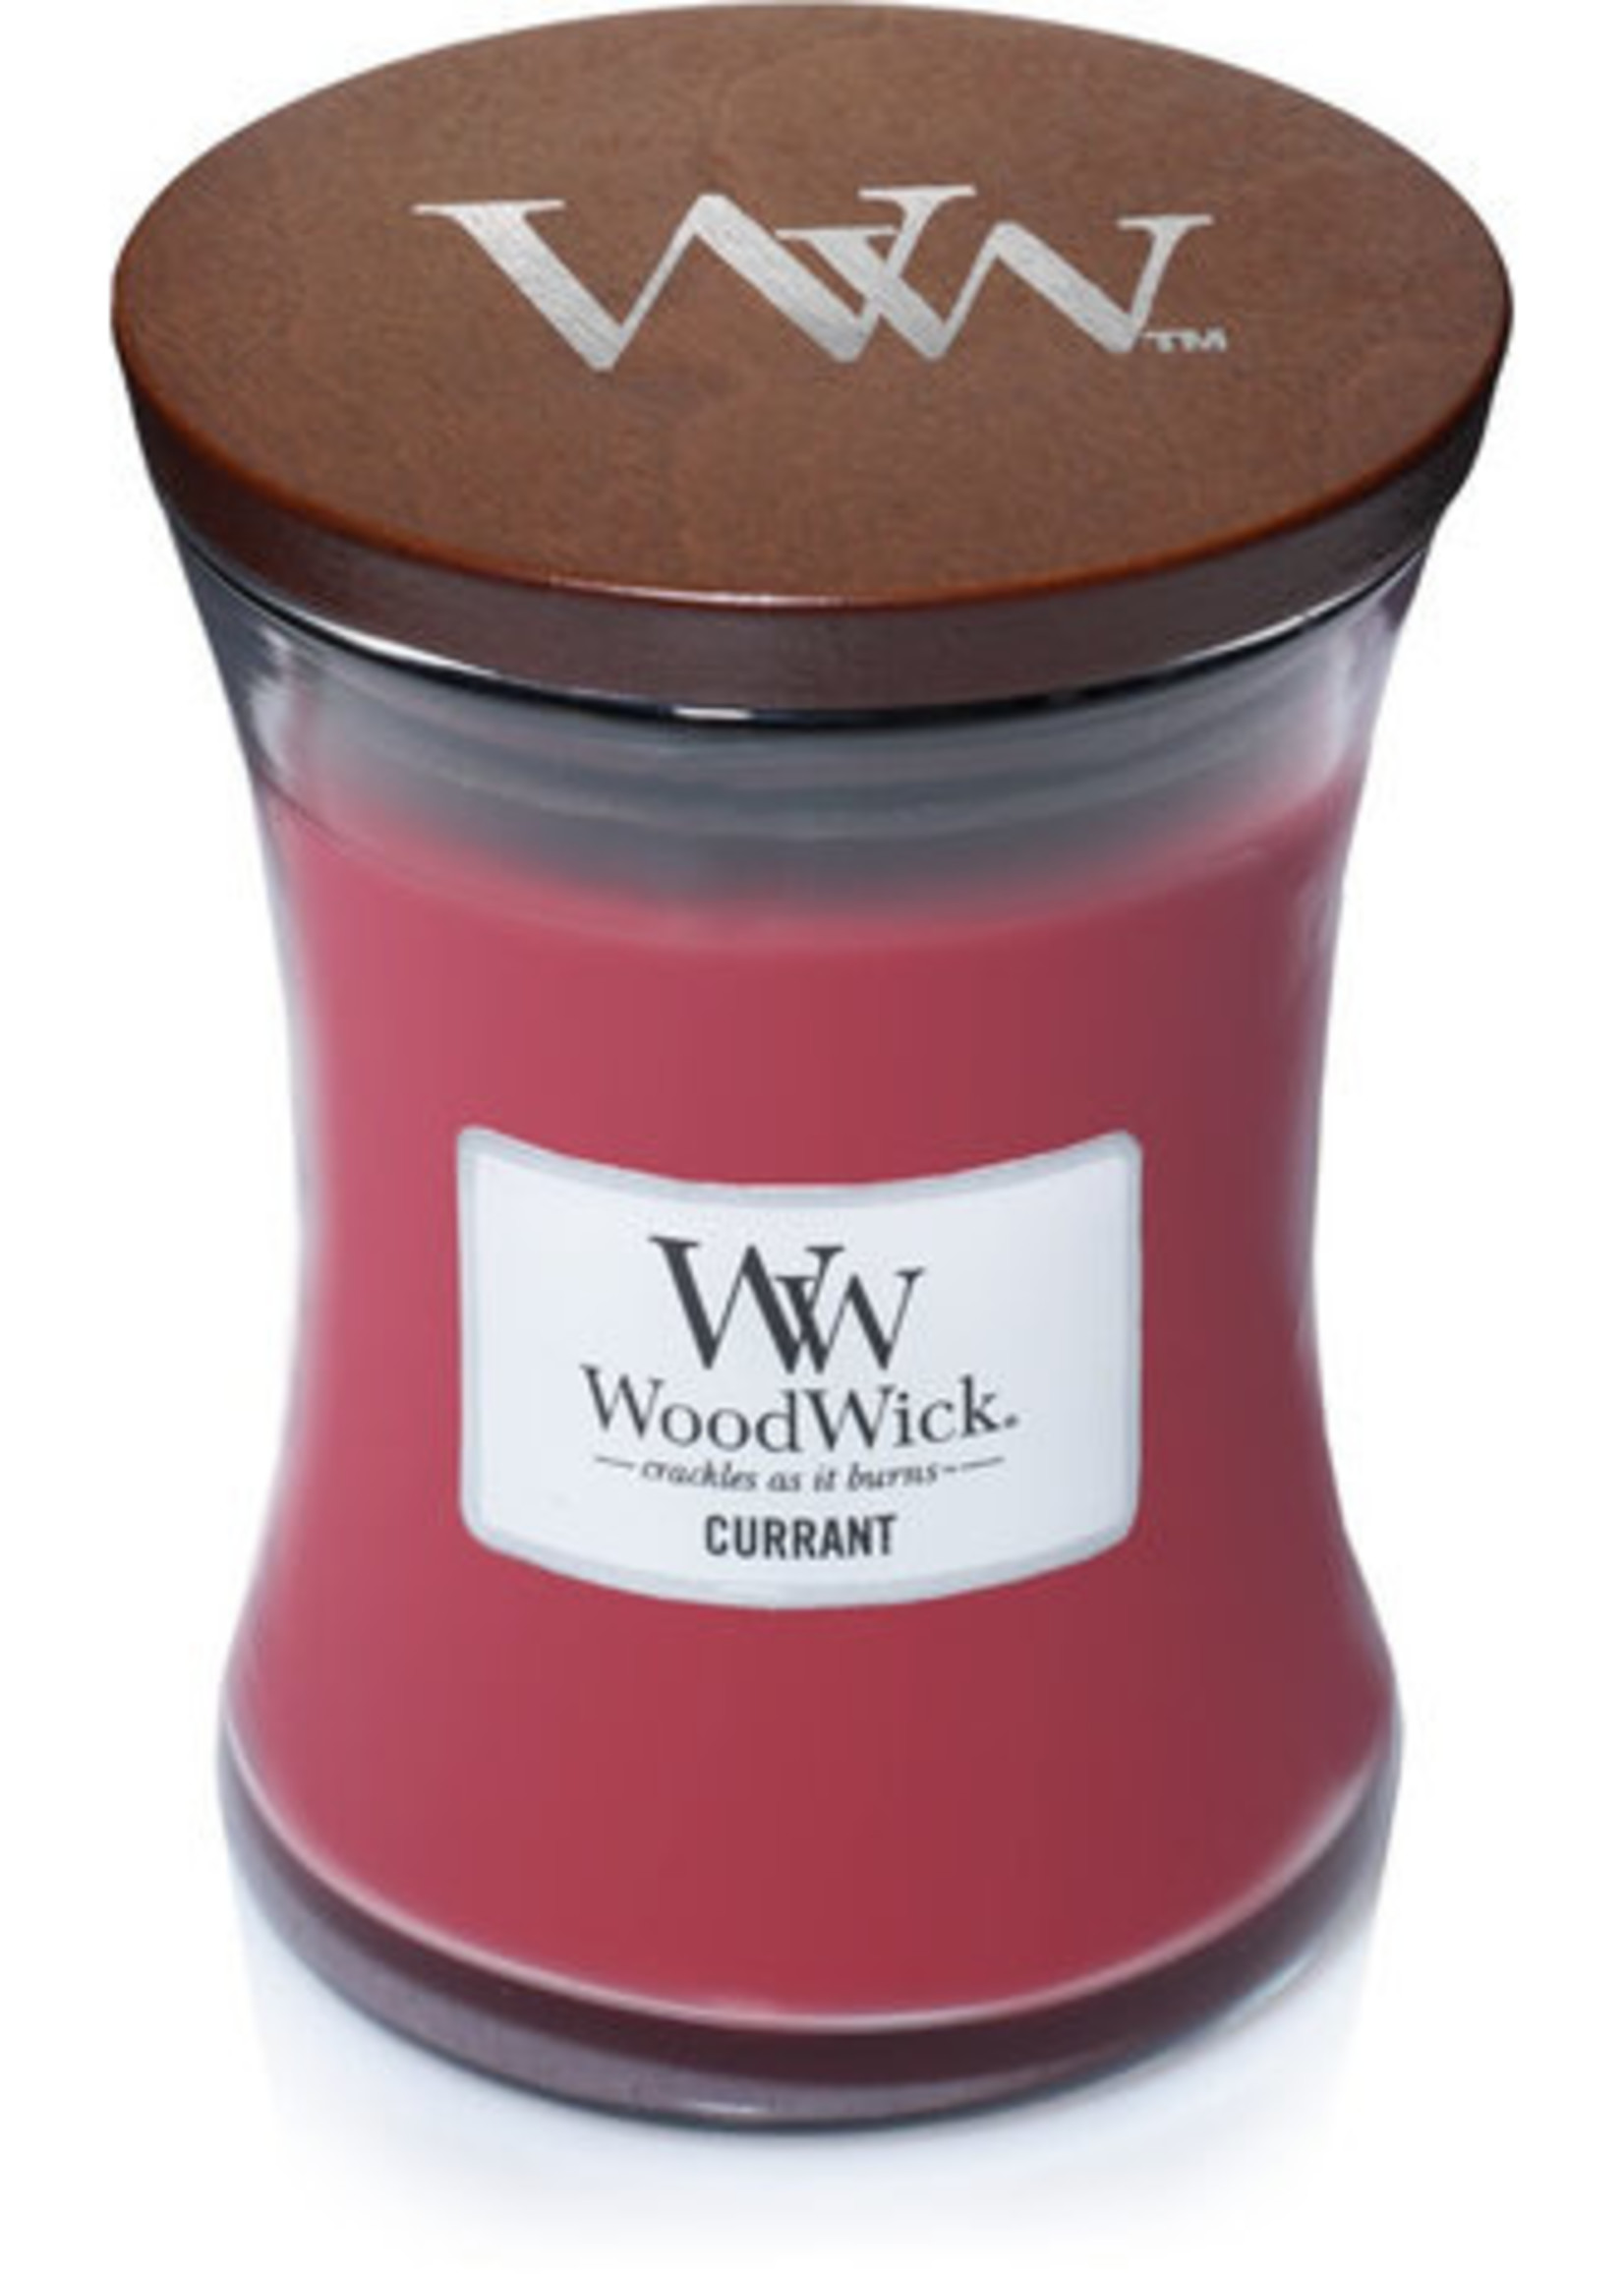 WW Currant Medium Candle